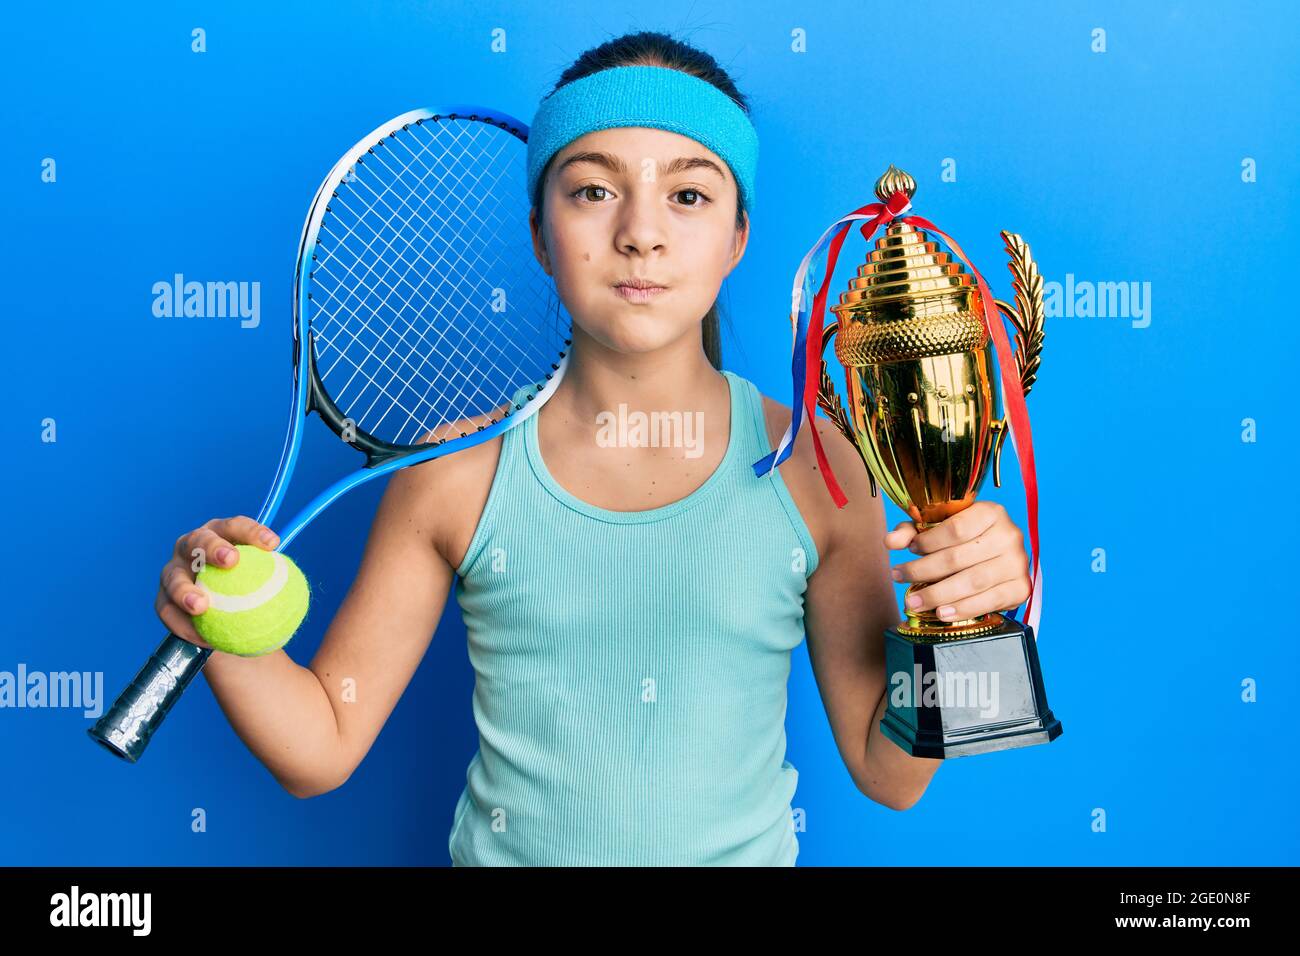 Schöne Brünette kleines Mädchen spielen Tennis mit Trophäe Puffing Wangen  mit lustigen Gesicht. Mund mit Luft aufgeblasen, Luft fangen  Stockfotografie - Alamy